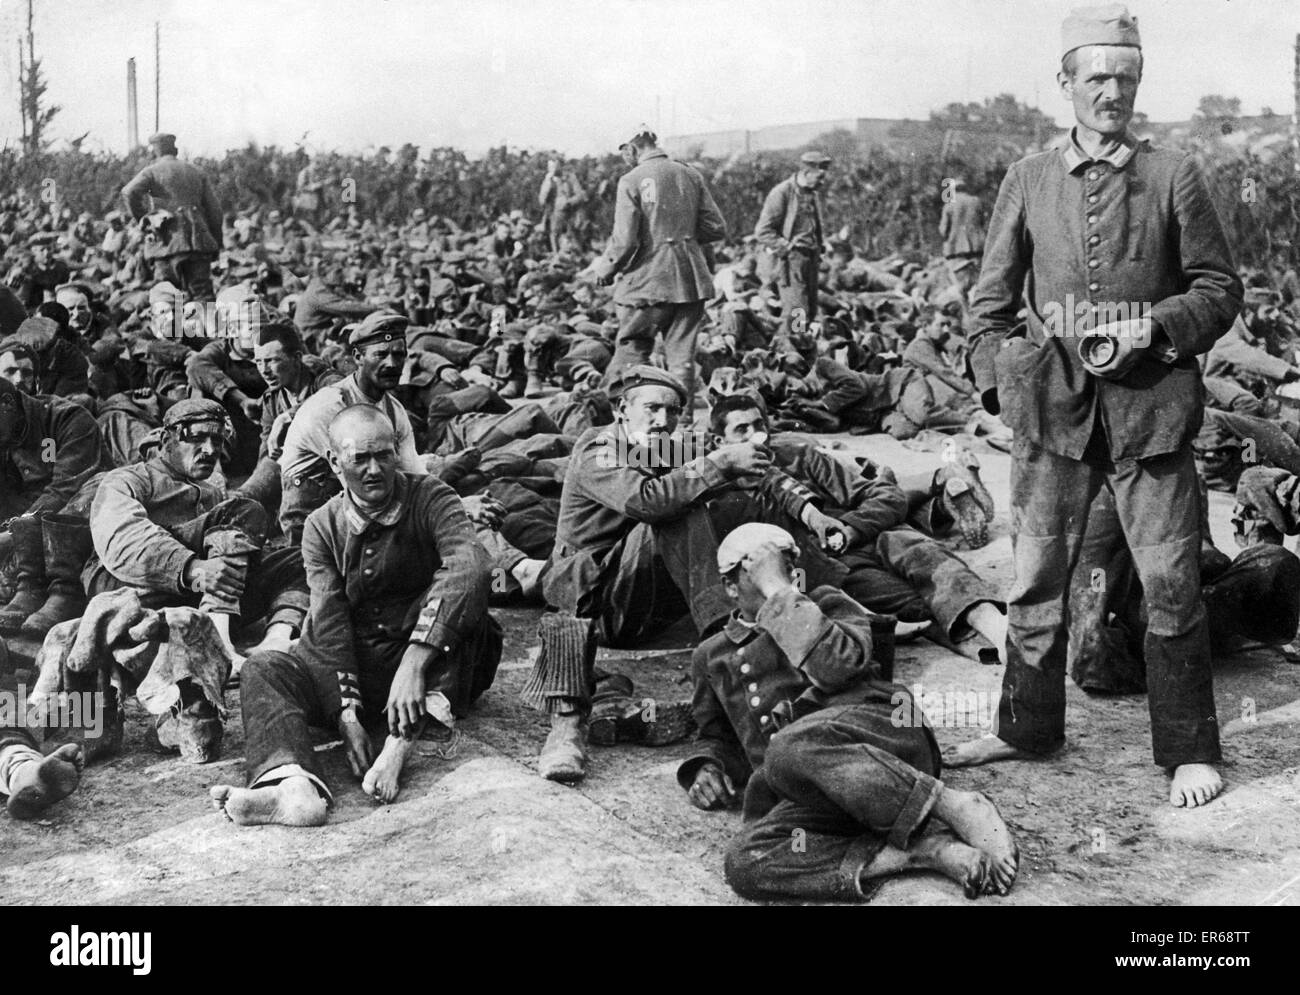 Deutsche Kriegsgefangene aus der Somme-Offensive müde und erschöpfter, haben sie gerade in ihrem Lager angekommen. Das erste, was, das Sie tun, ist, um ihre Füße zu erleichtern, indem Sie ihre schweren Stiefel entfernen. Stockfoto